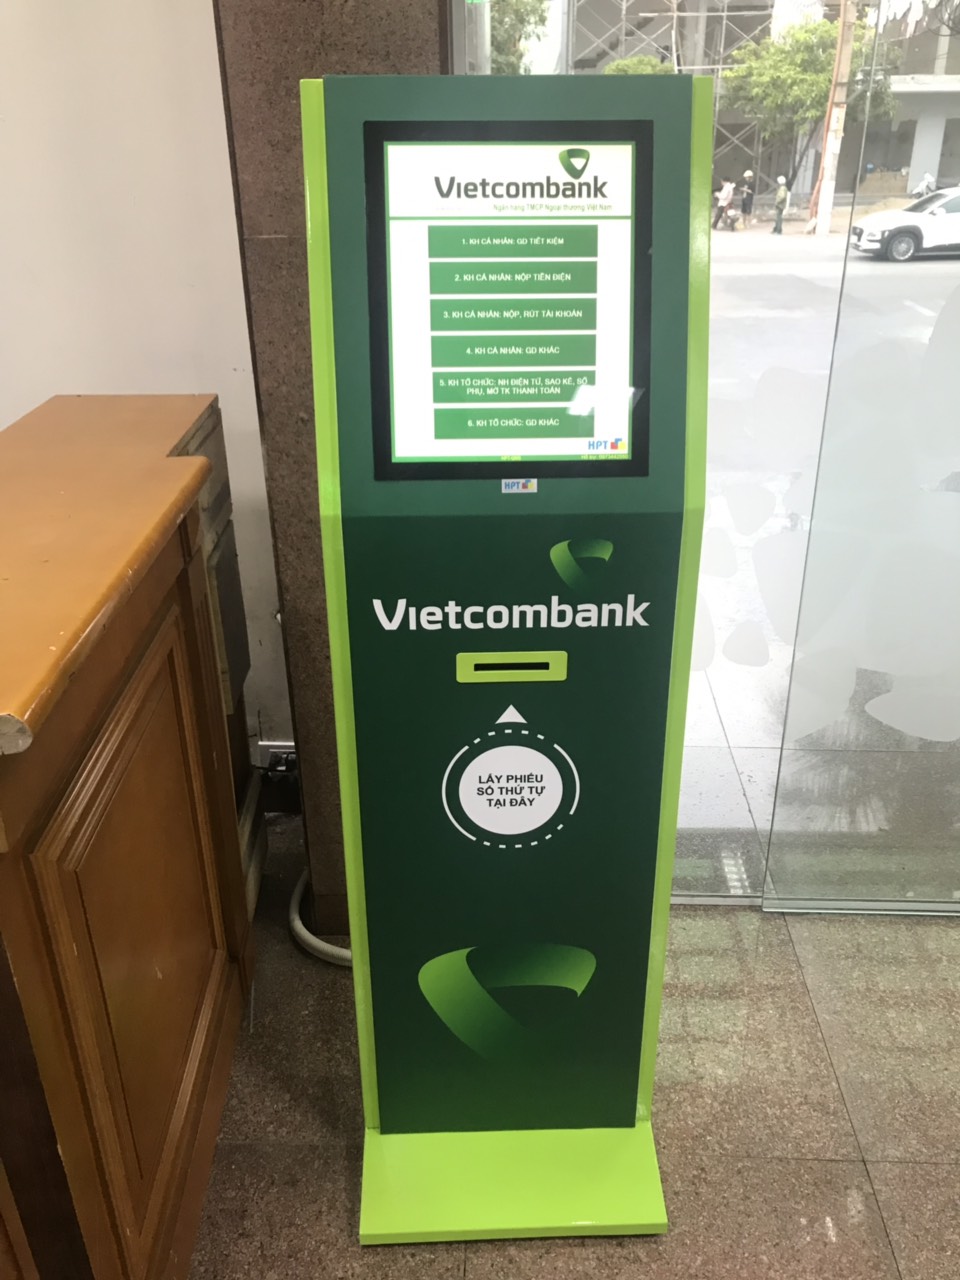 Lắp đặt hệ thống xếp hàng thông minh - Vietcombank